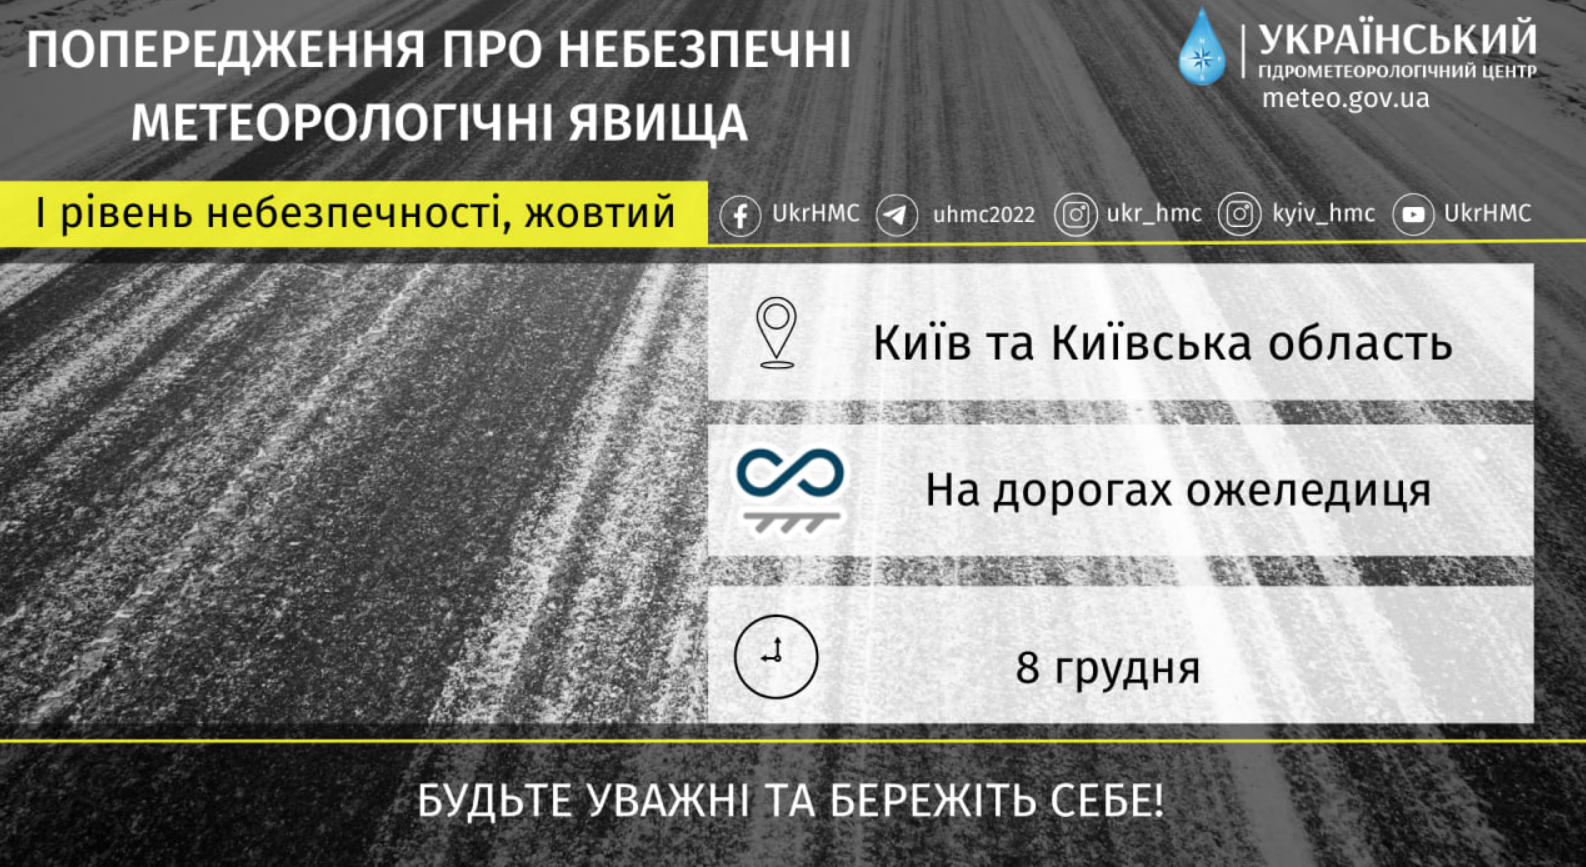 Прогноз погоди у Києві на 8 грудня 